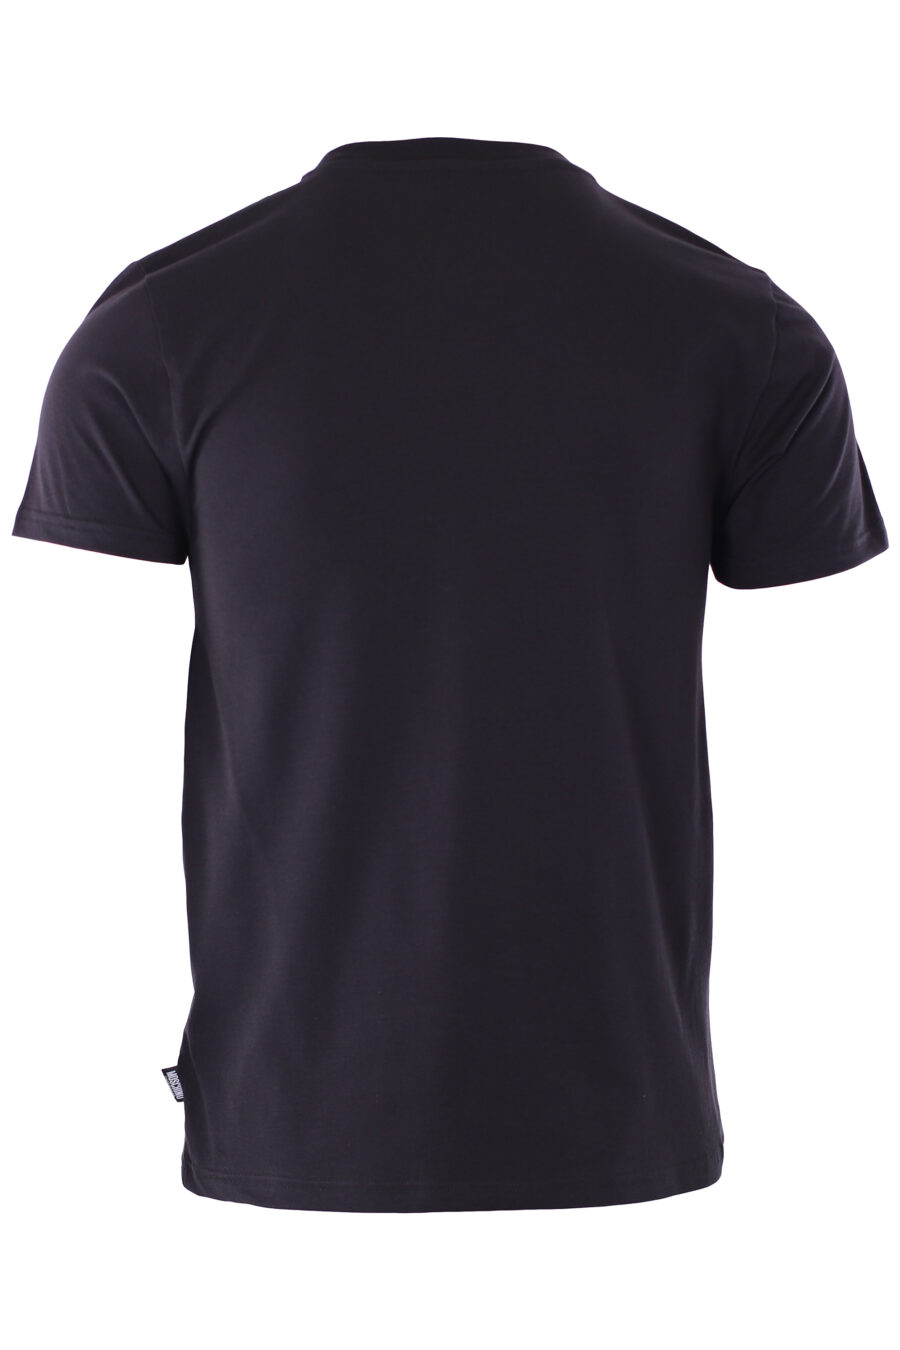 T-shirt noir avec minilogue "underbear" - IMG 6589 1